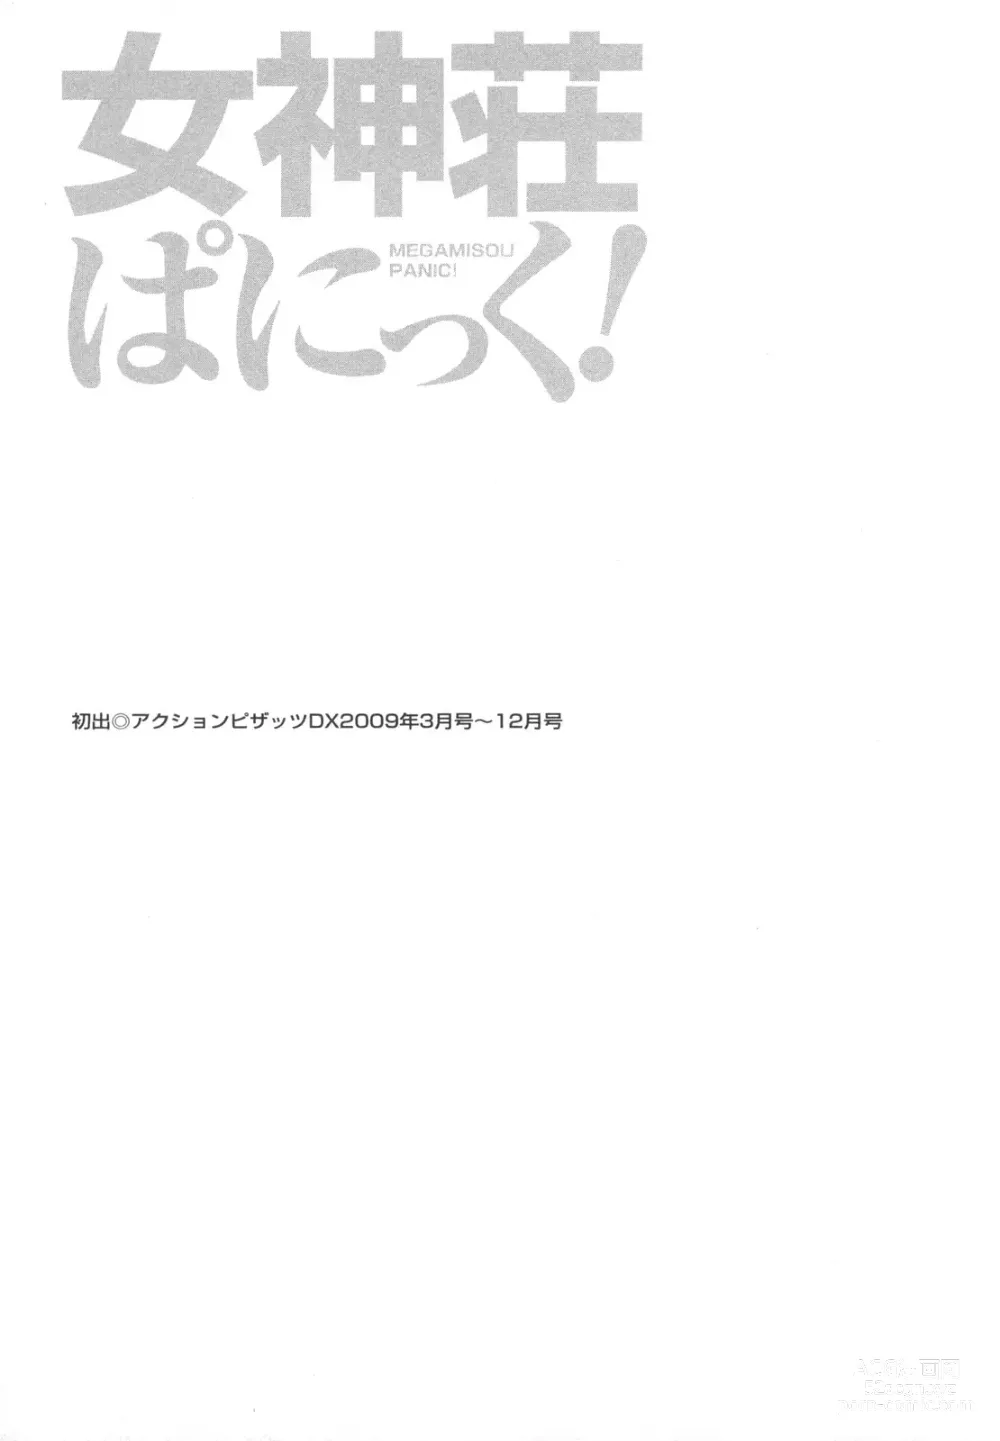 Page 191 of manga Megamisou Panic!